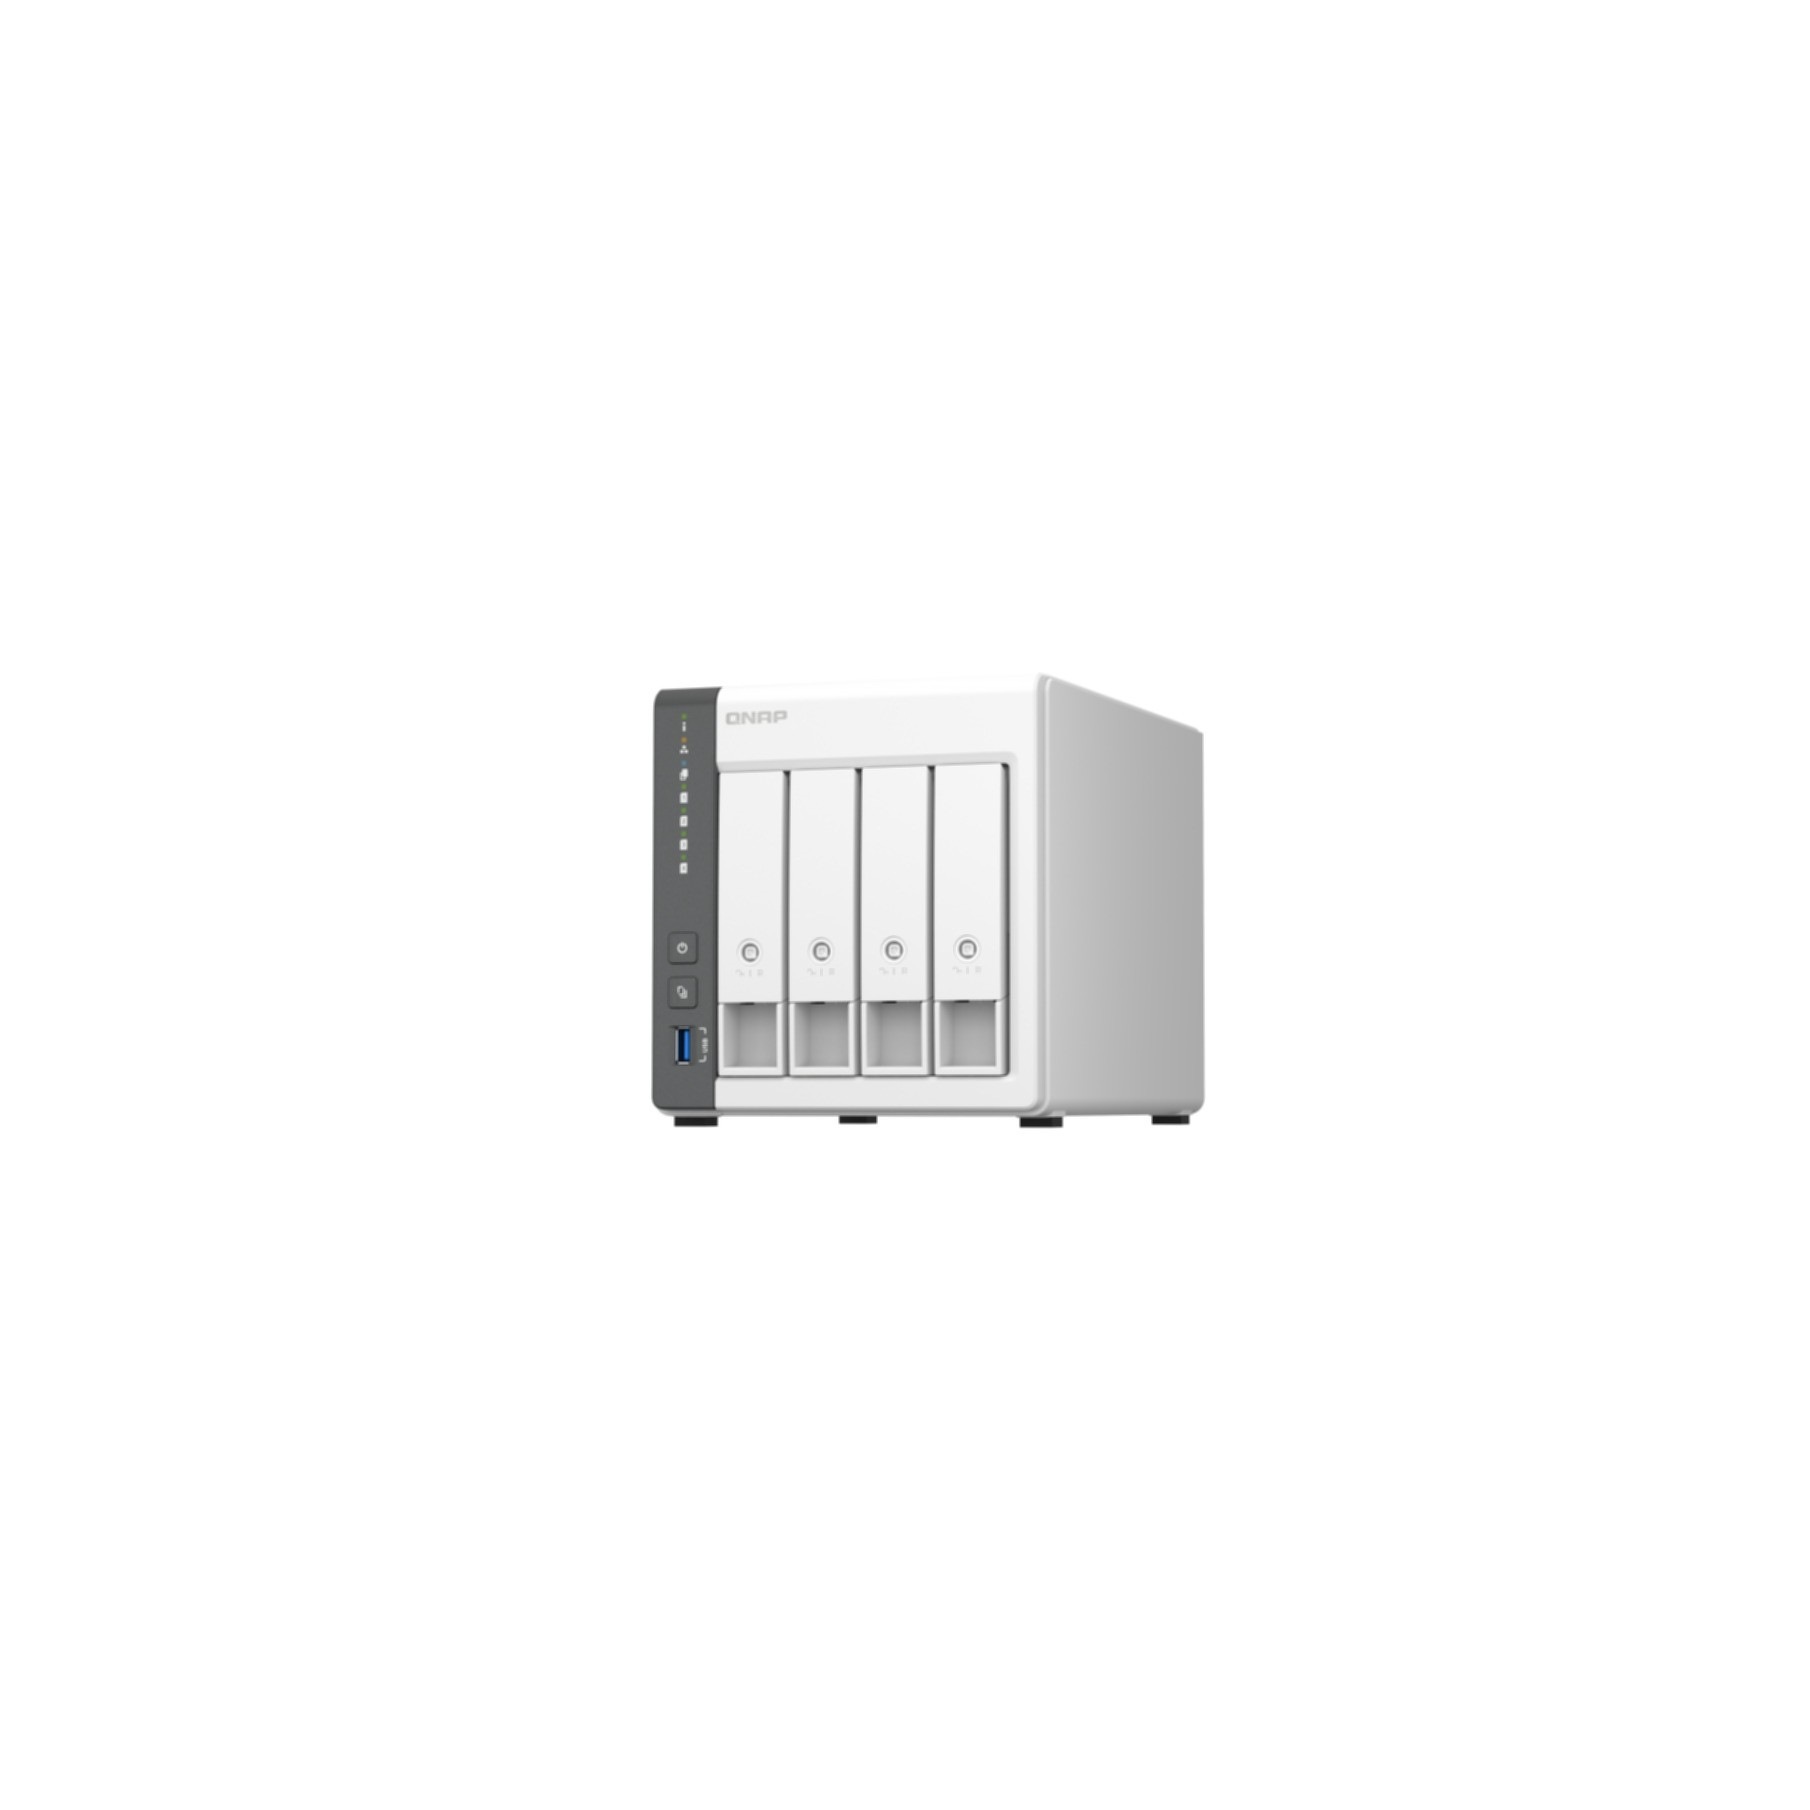 QNAP NAS-Server »TS-433«